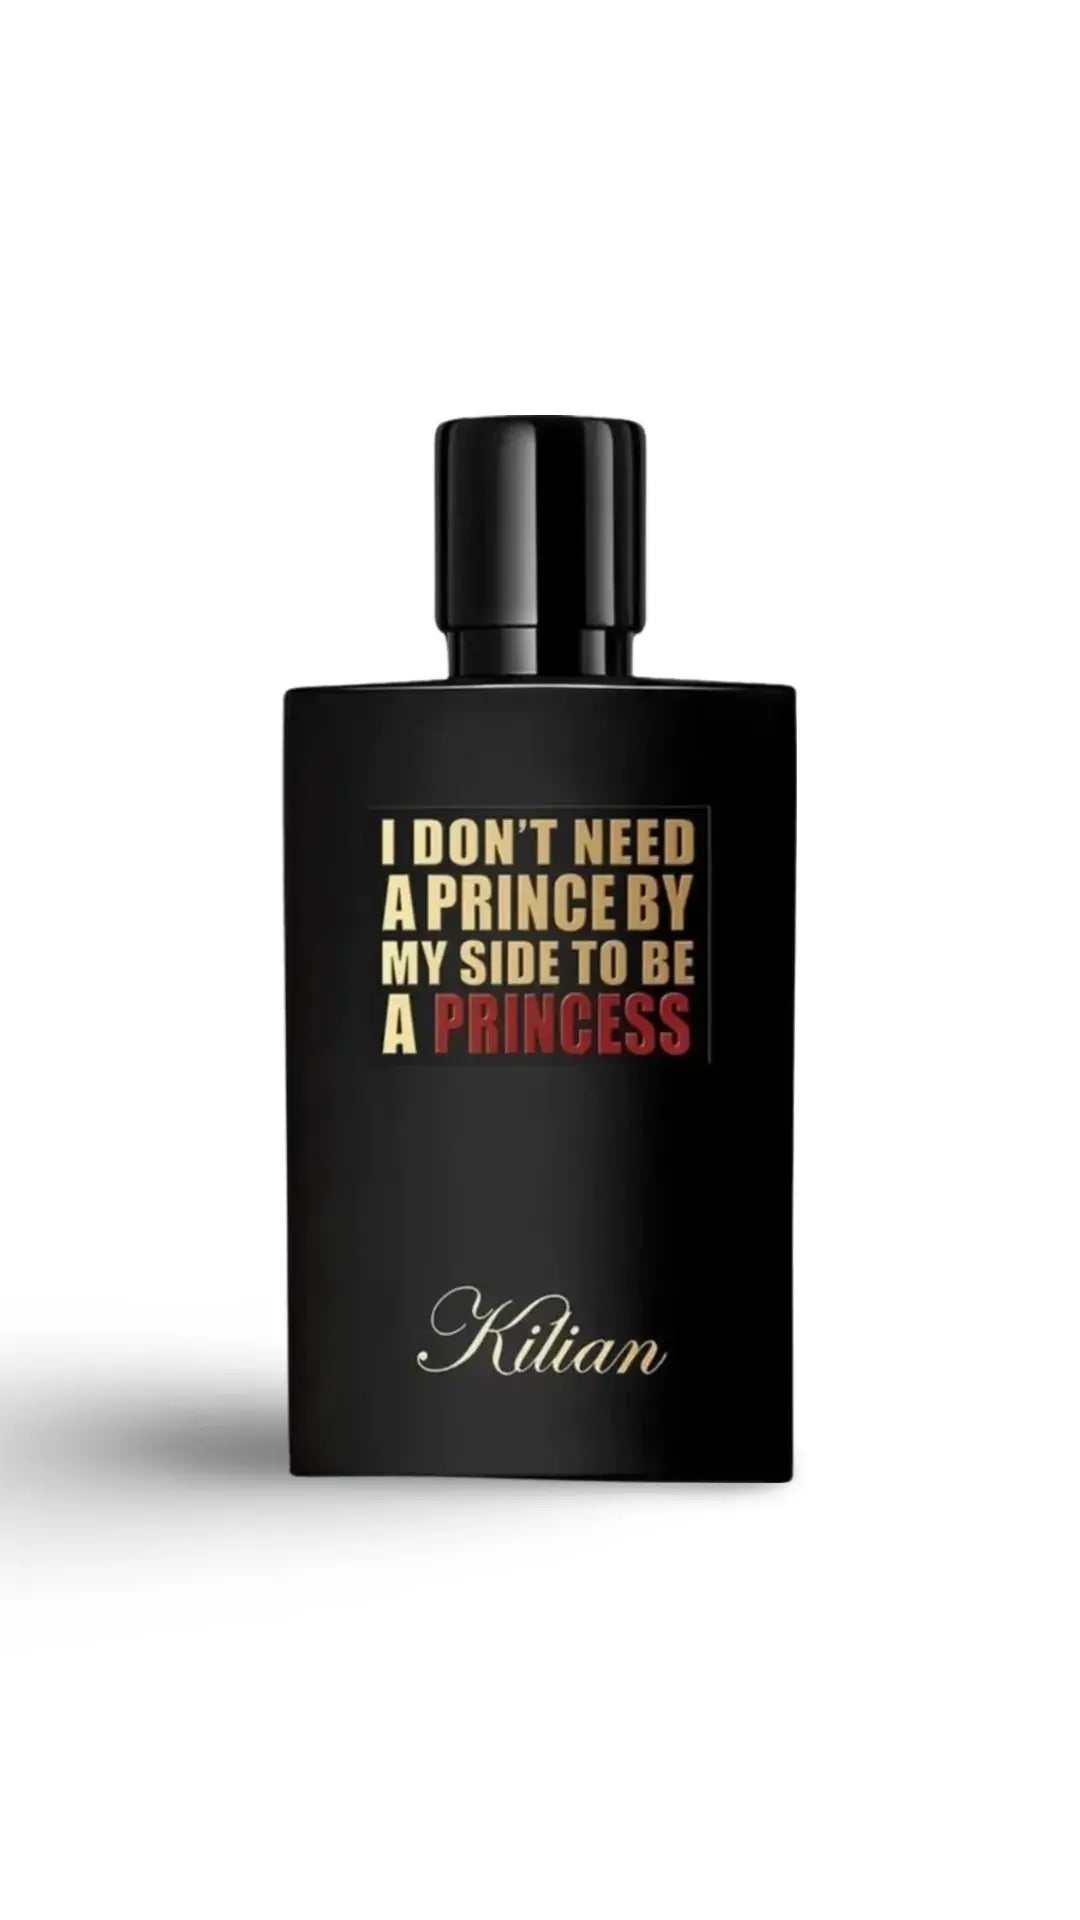 Princess Kilian - 100ml refill